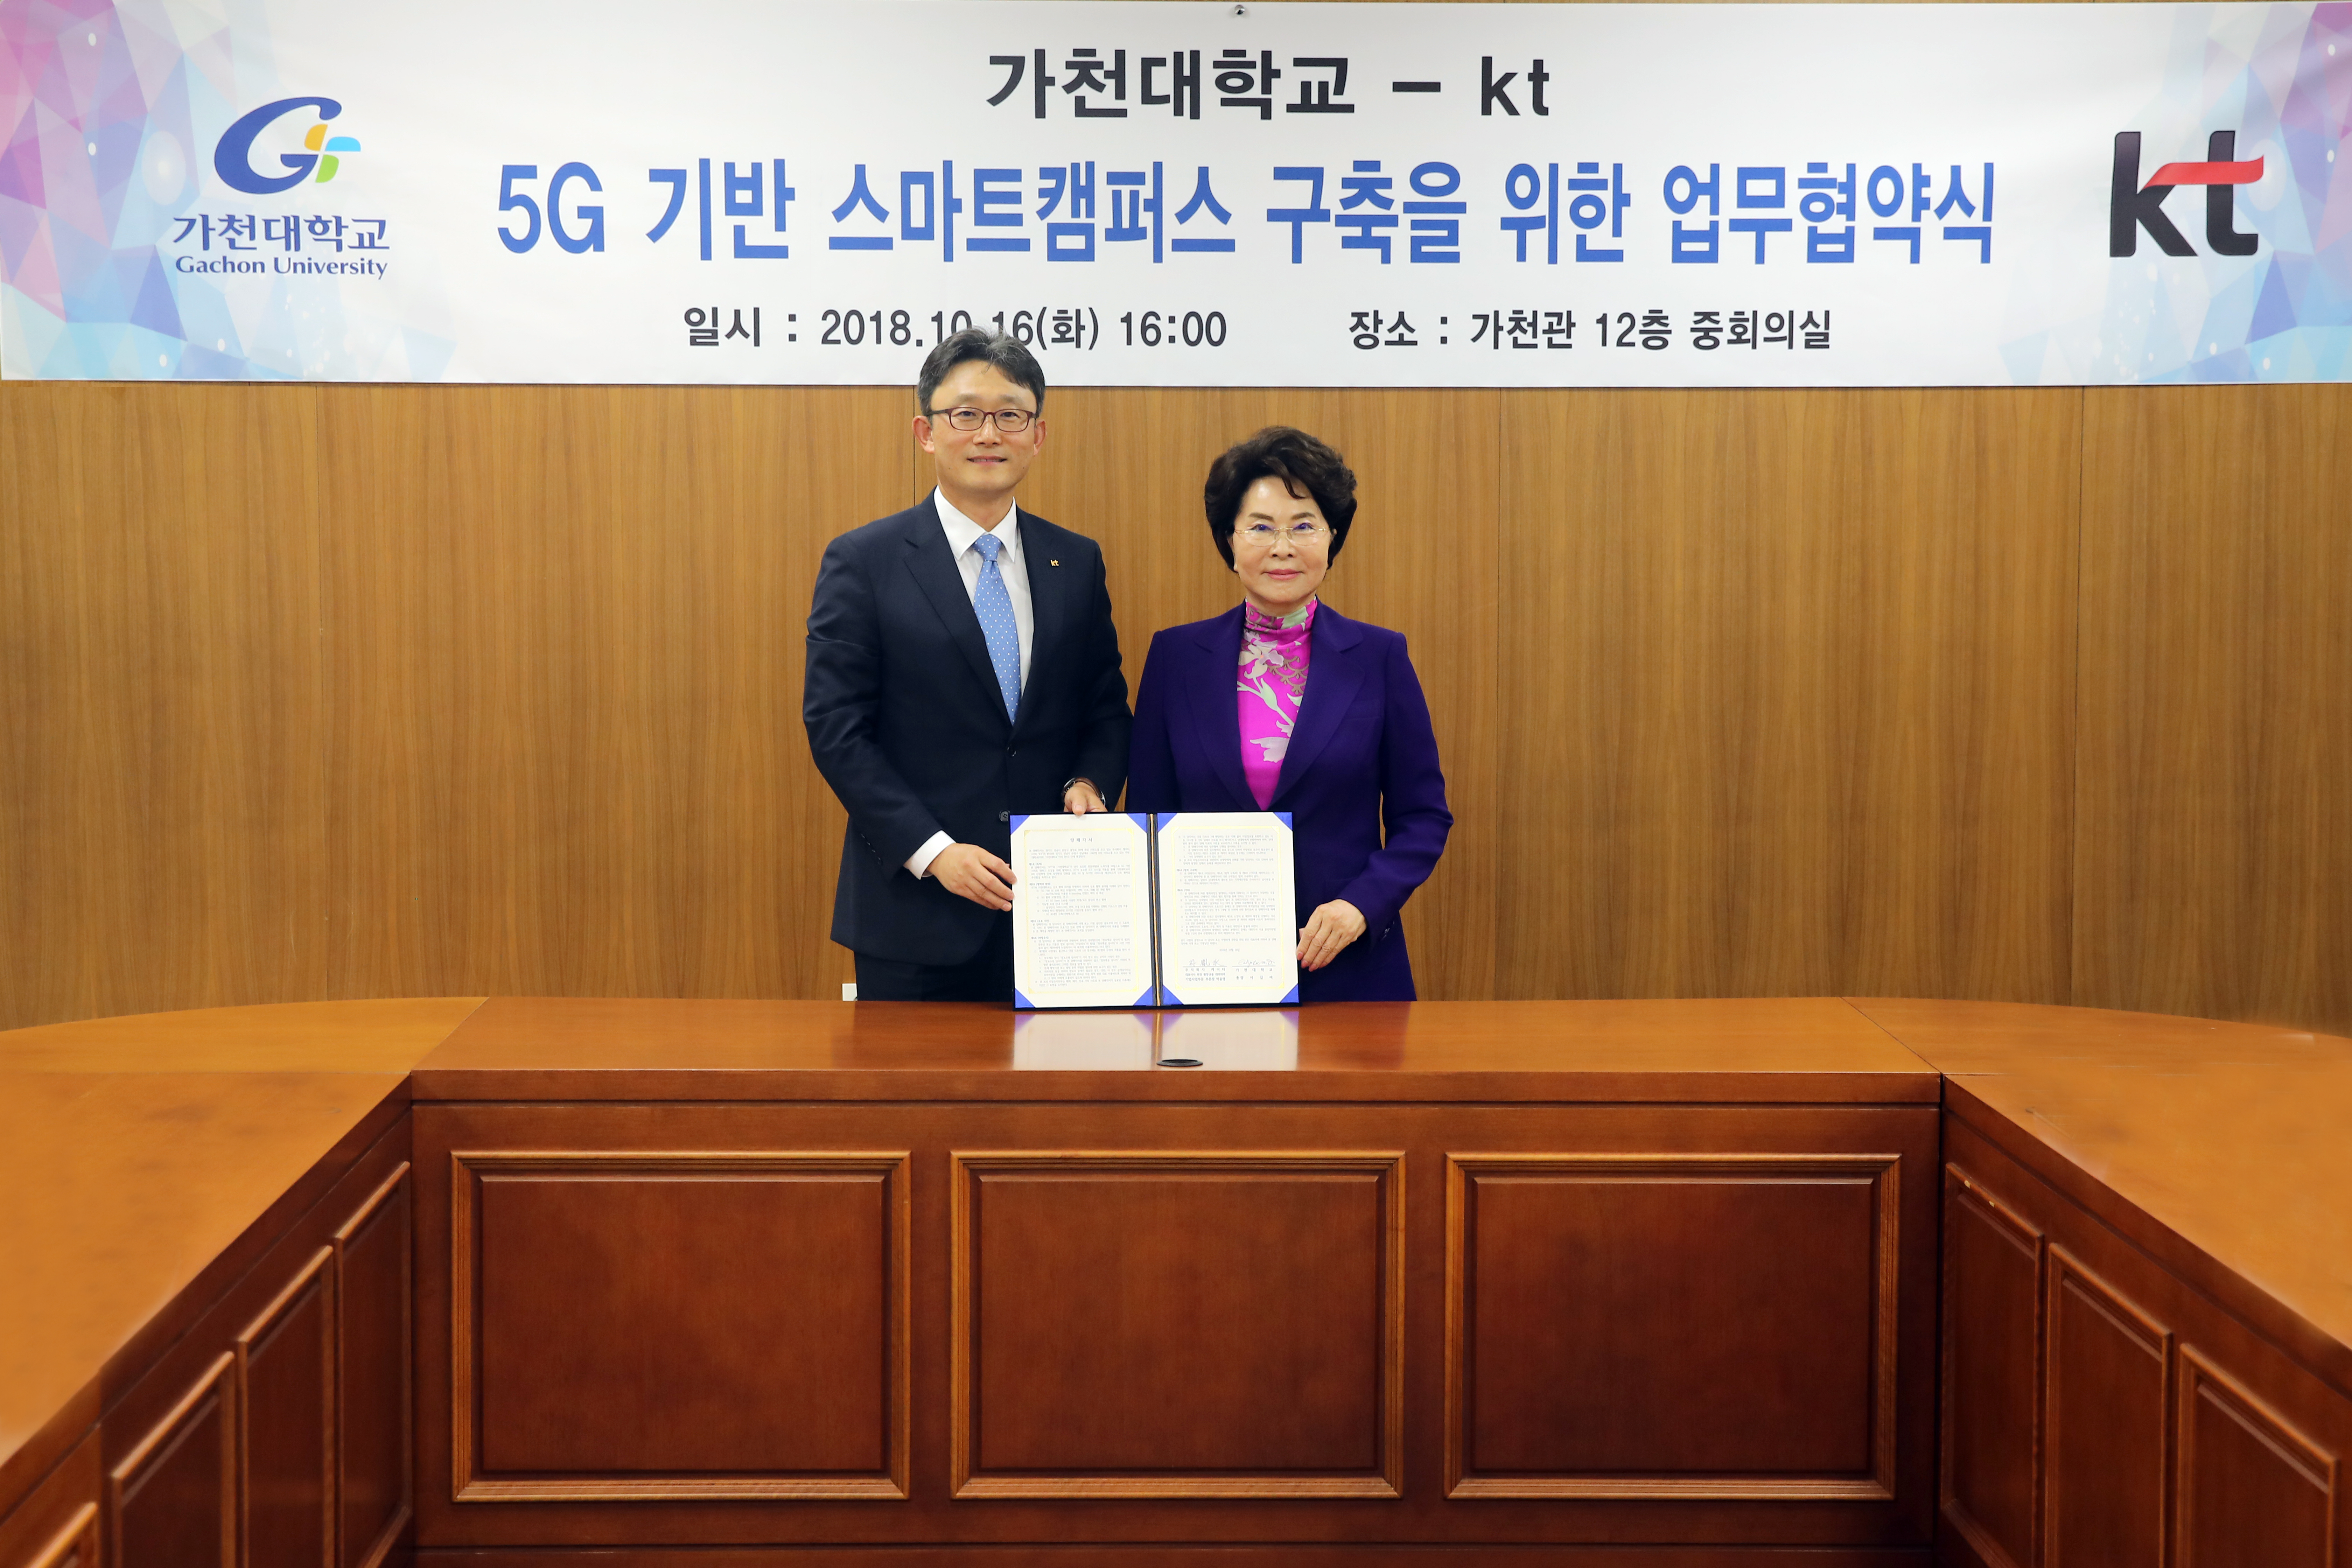 이길여(오른쪽) 가천대 총장과 박윤영 KT 기업사업부문장이 16일 가천대학교에서‘5G 기반 스마트 캠퍼스 조성을 위한 업무협약을 체결하고 기념사진을 찍고 있다. (가천대 제공) 